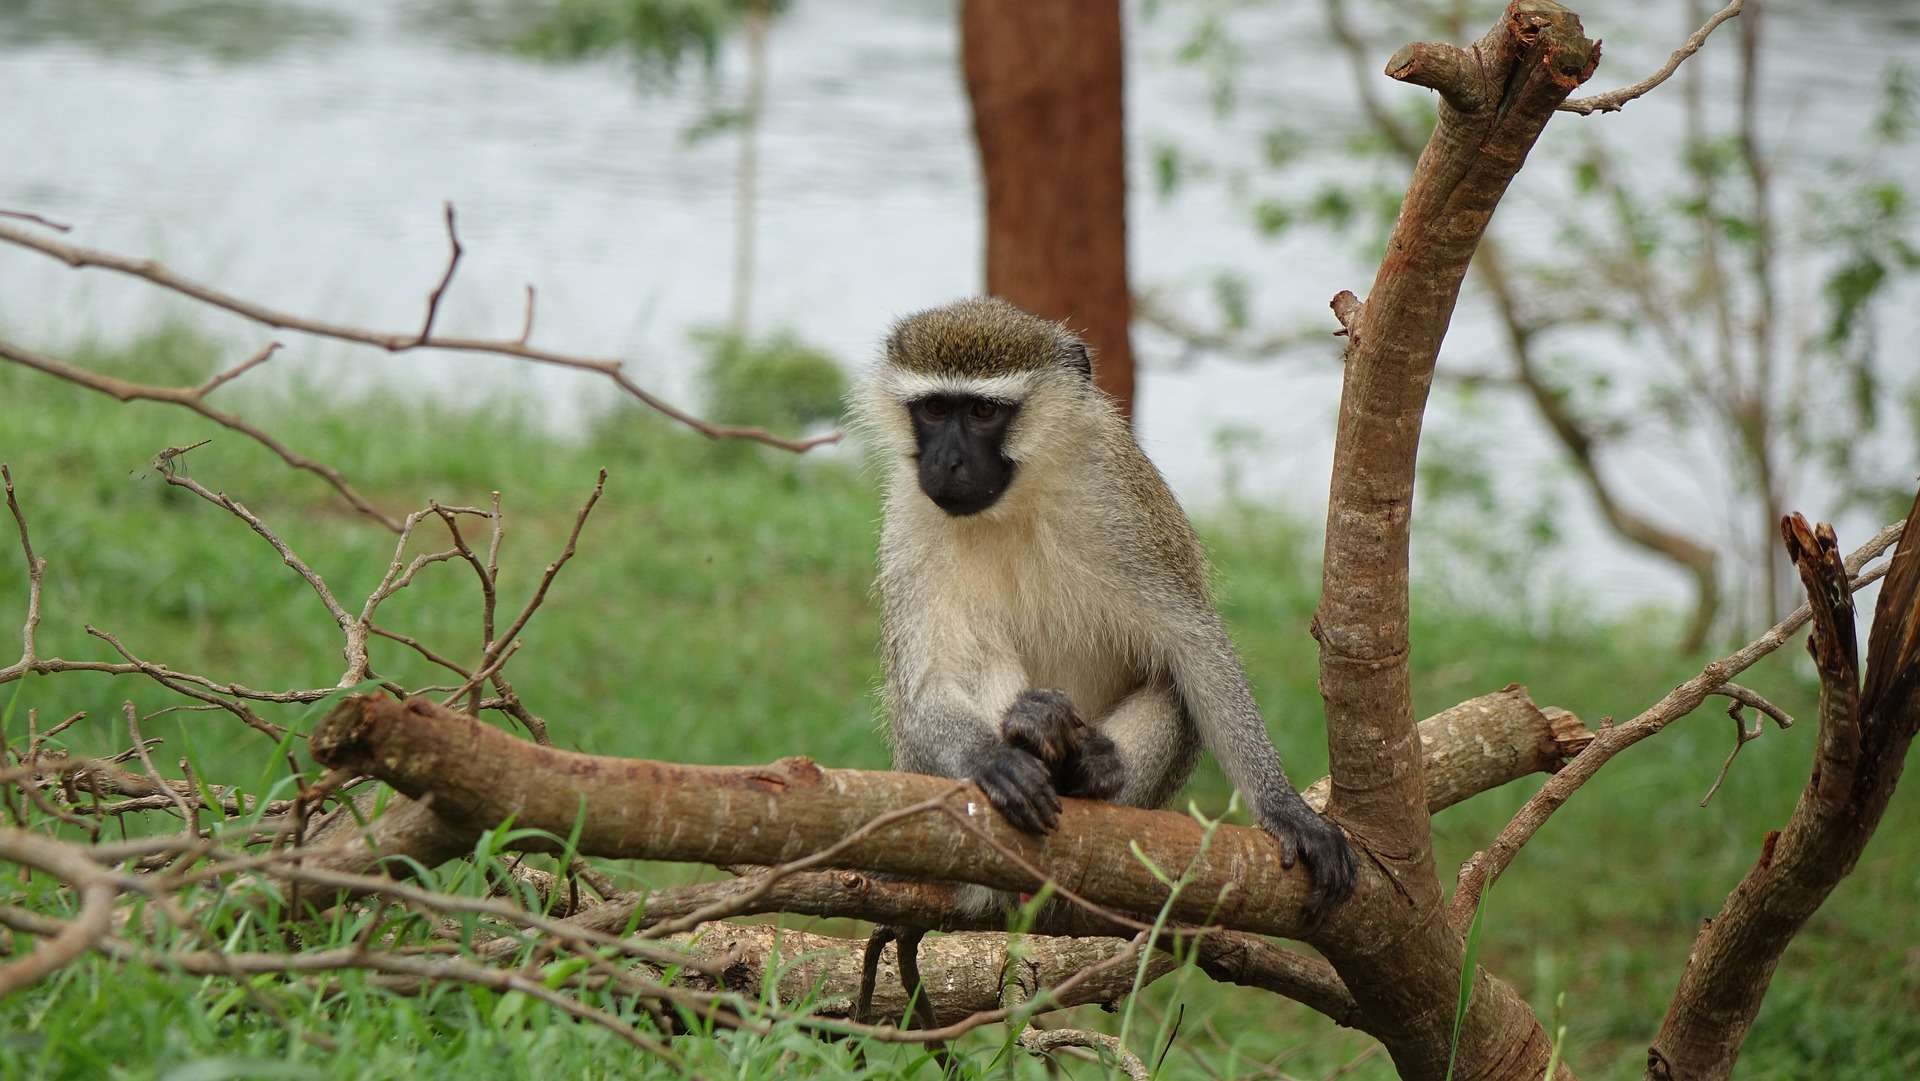 Velvet monkey in Africa